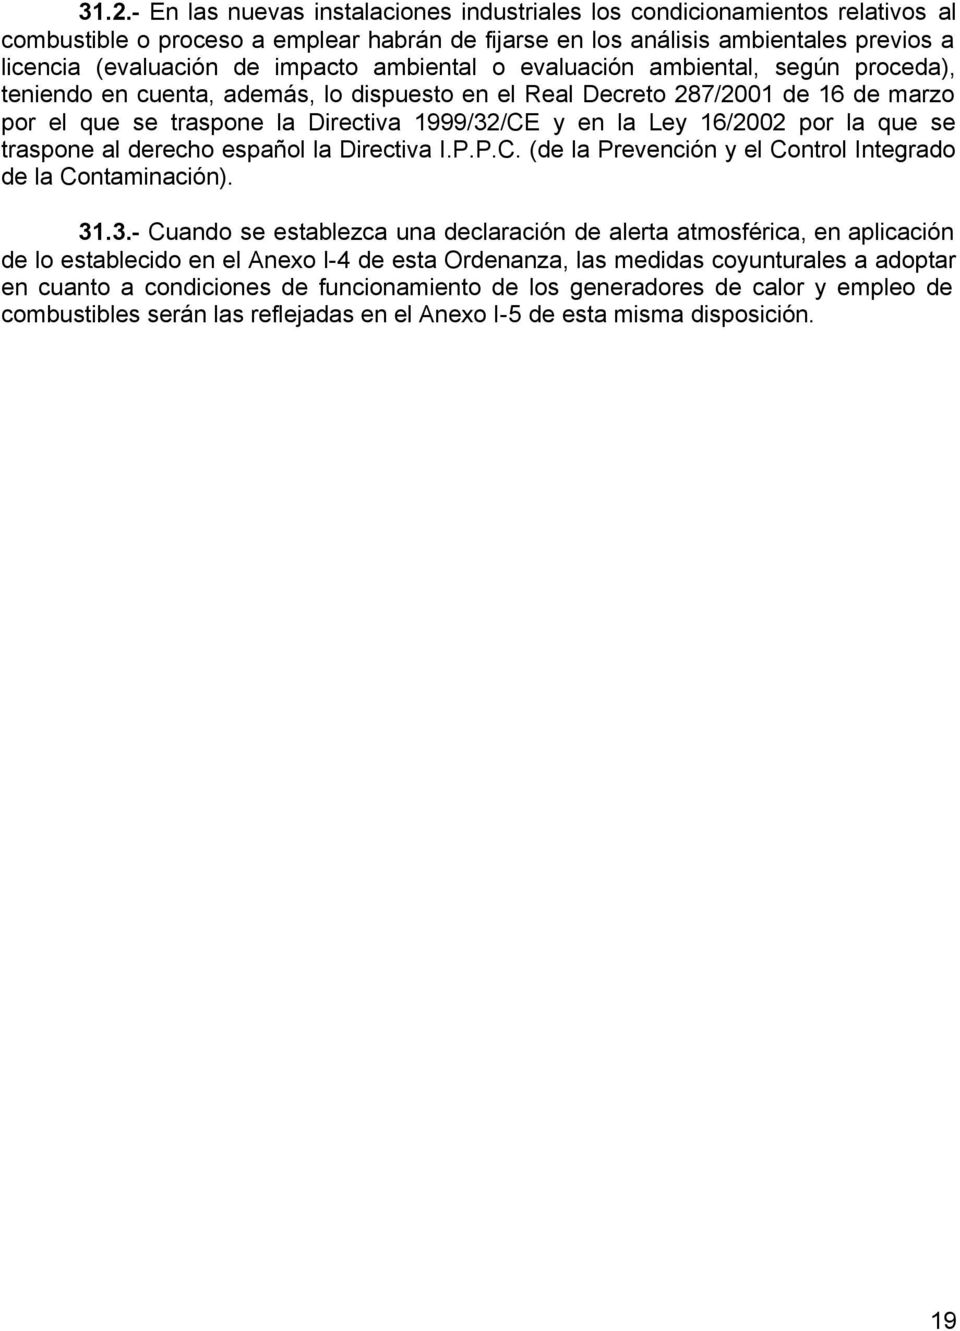 Ley 16/2002 por la que se traspone al derecho español la Directiva I.P.P.C. (de la Prevención y el Control Integrado de la Contaminación). 31